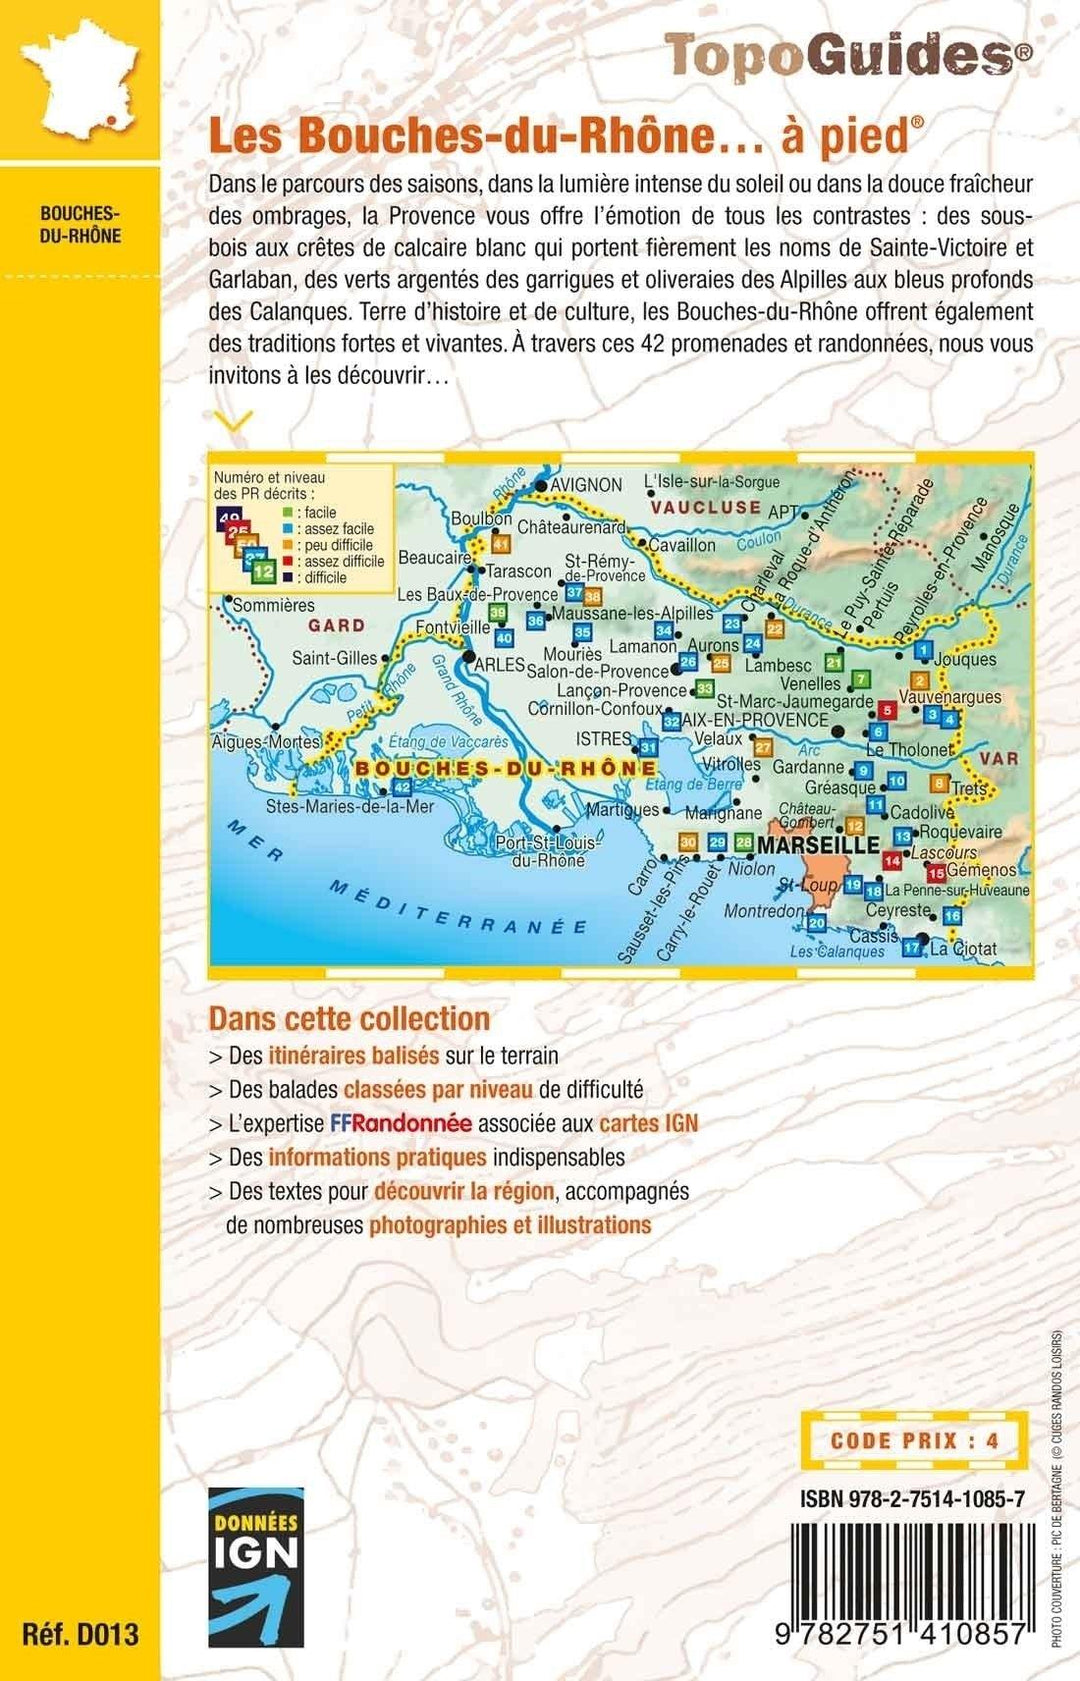 Topoguide de randonnée - Les Bouches-du-Rhône, la Provence à pied | FFR guide de randonnée FFR - Fédération Française de Randonnée 